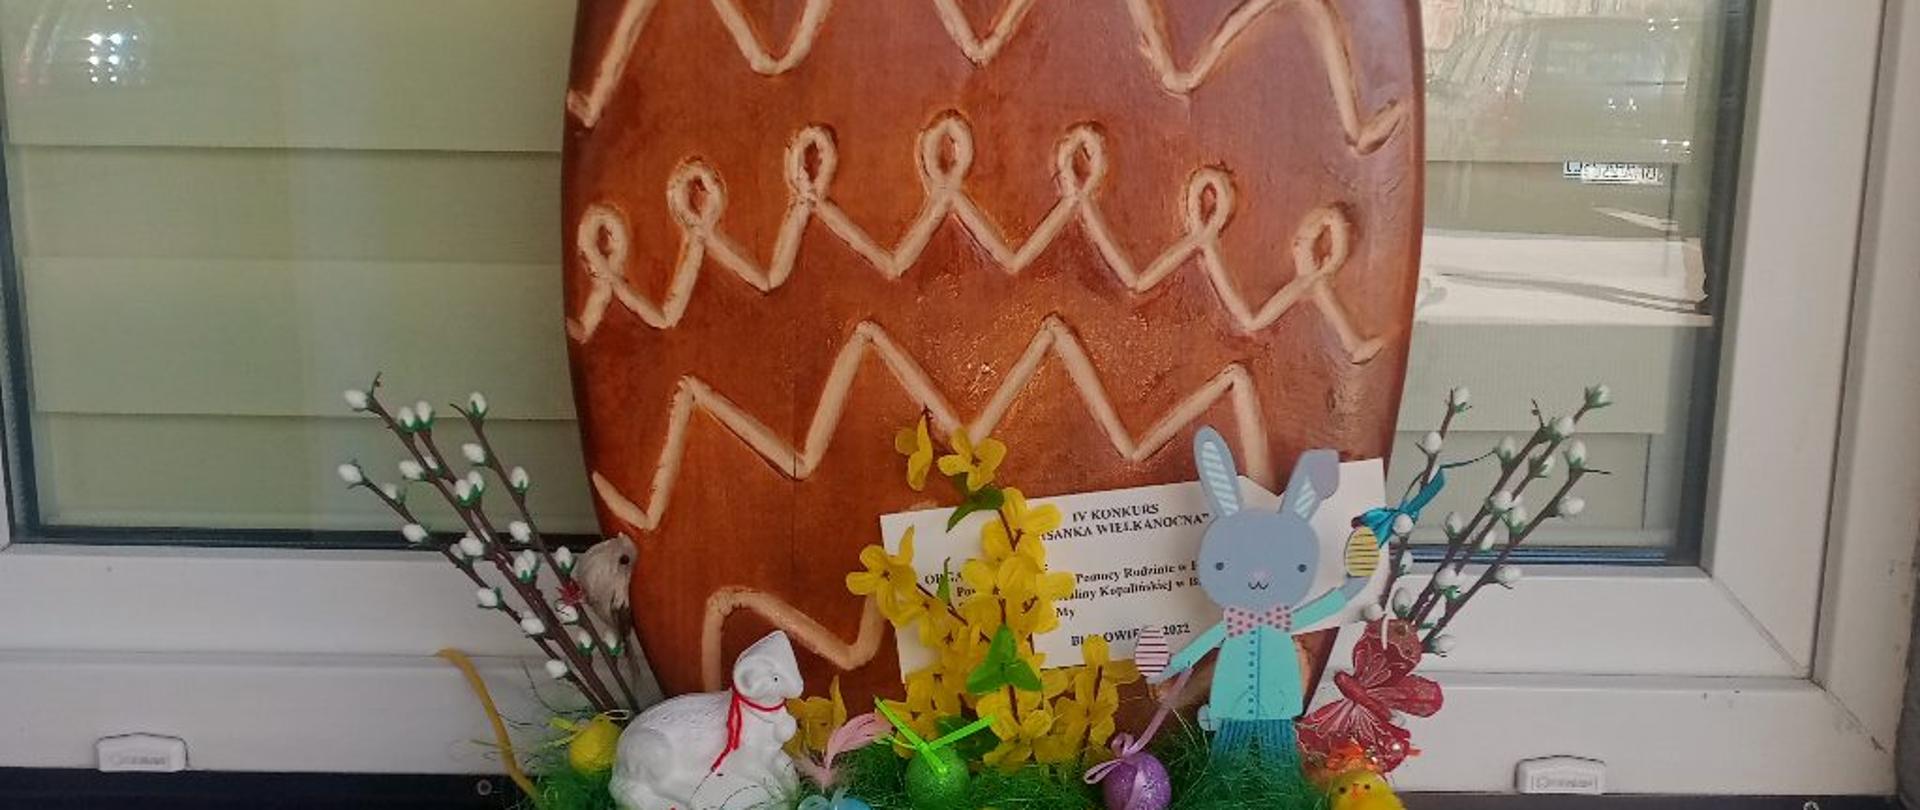 Wielkanocne jajko - praca konkursowa z ubiegłego roku